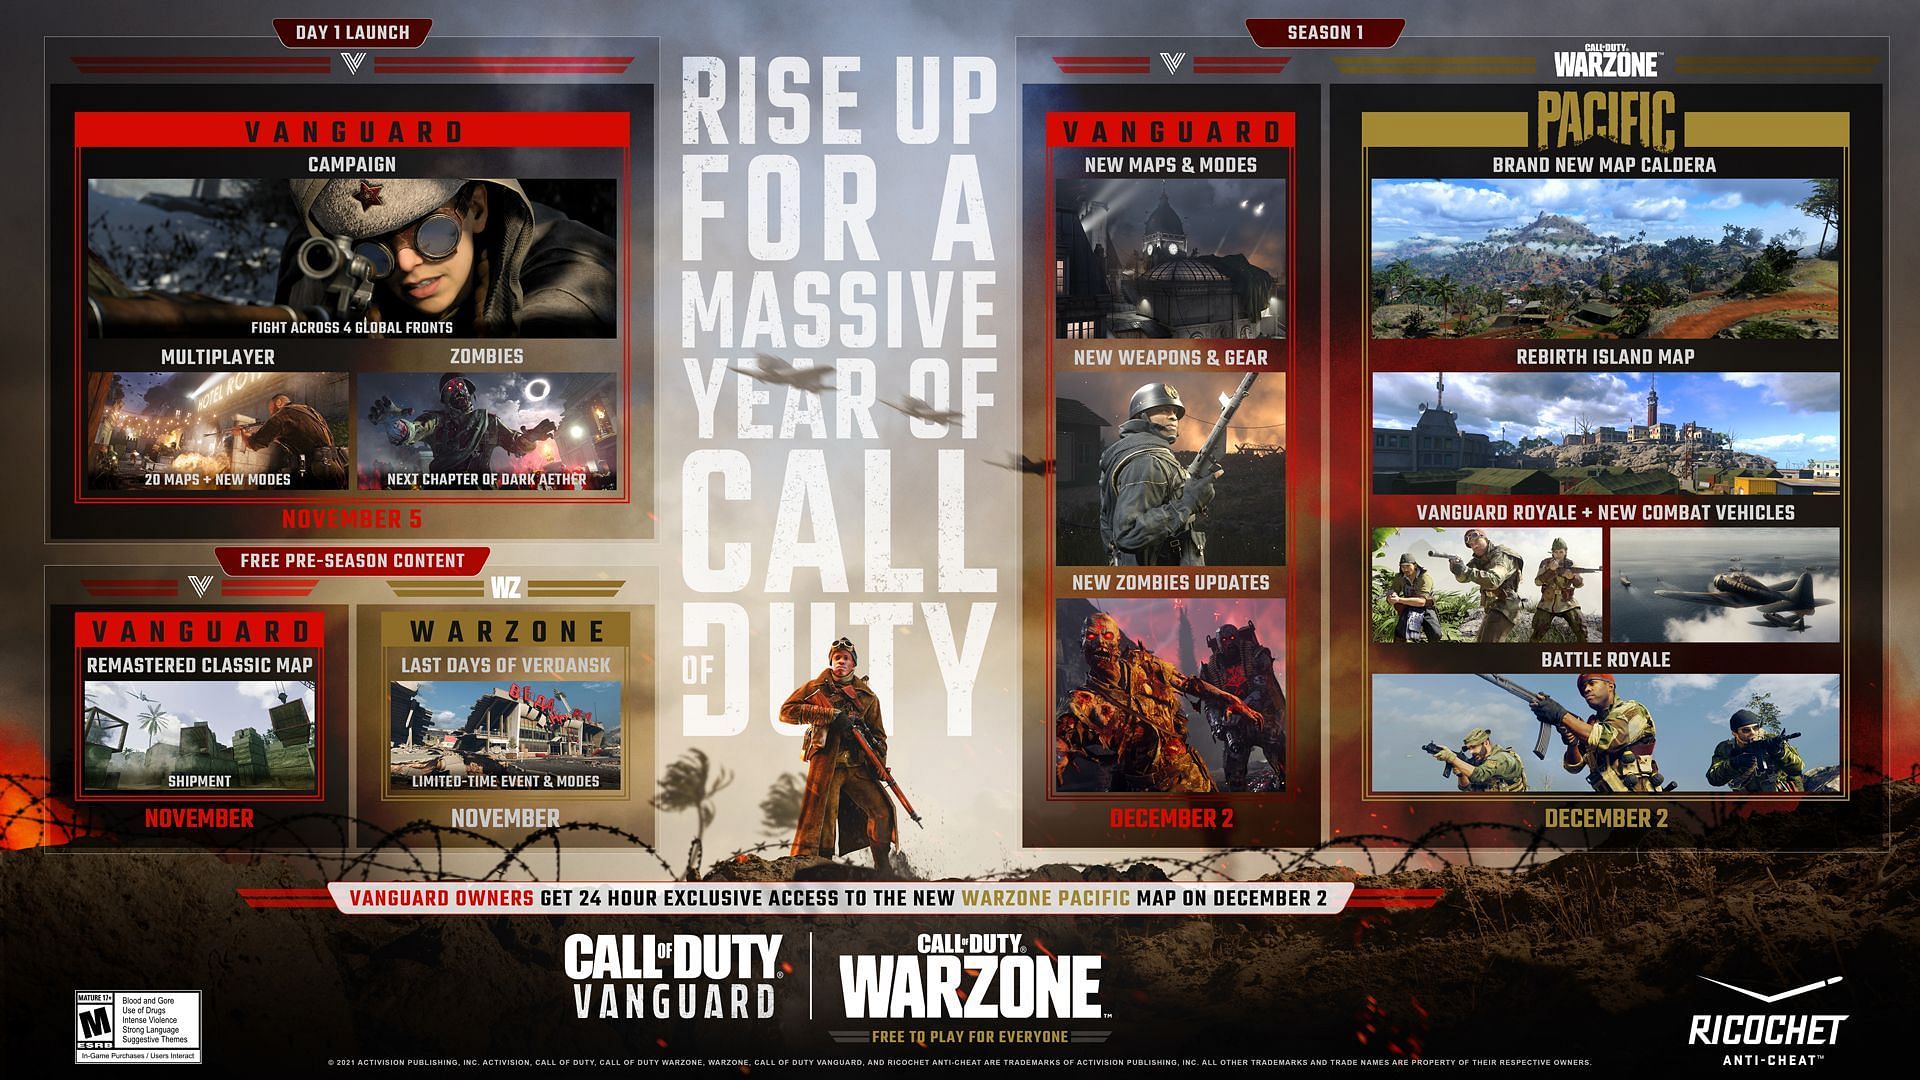 Call of Duty: Zemljevid vsebine Vanguard (slika prek Activision)